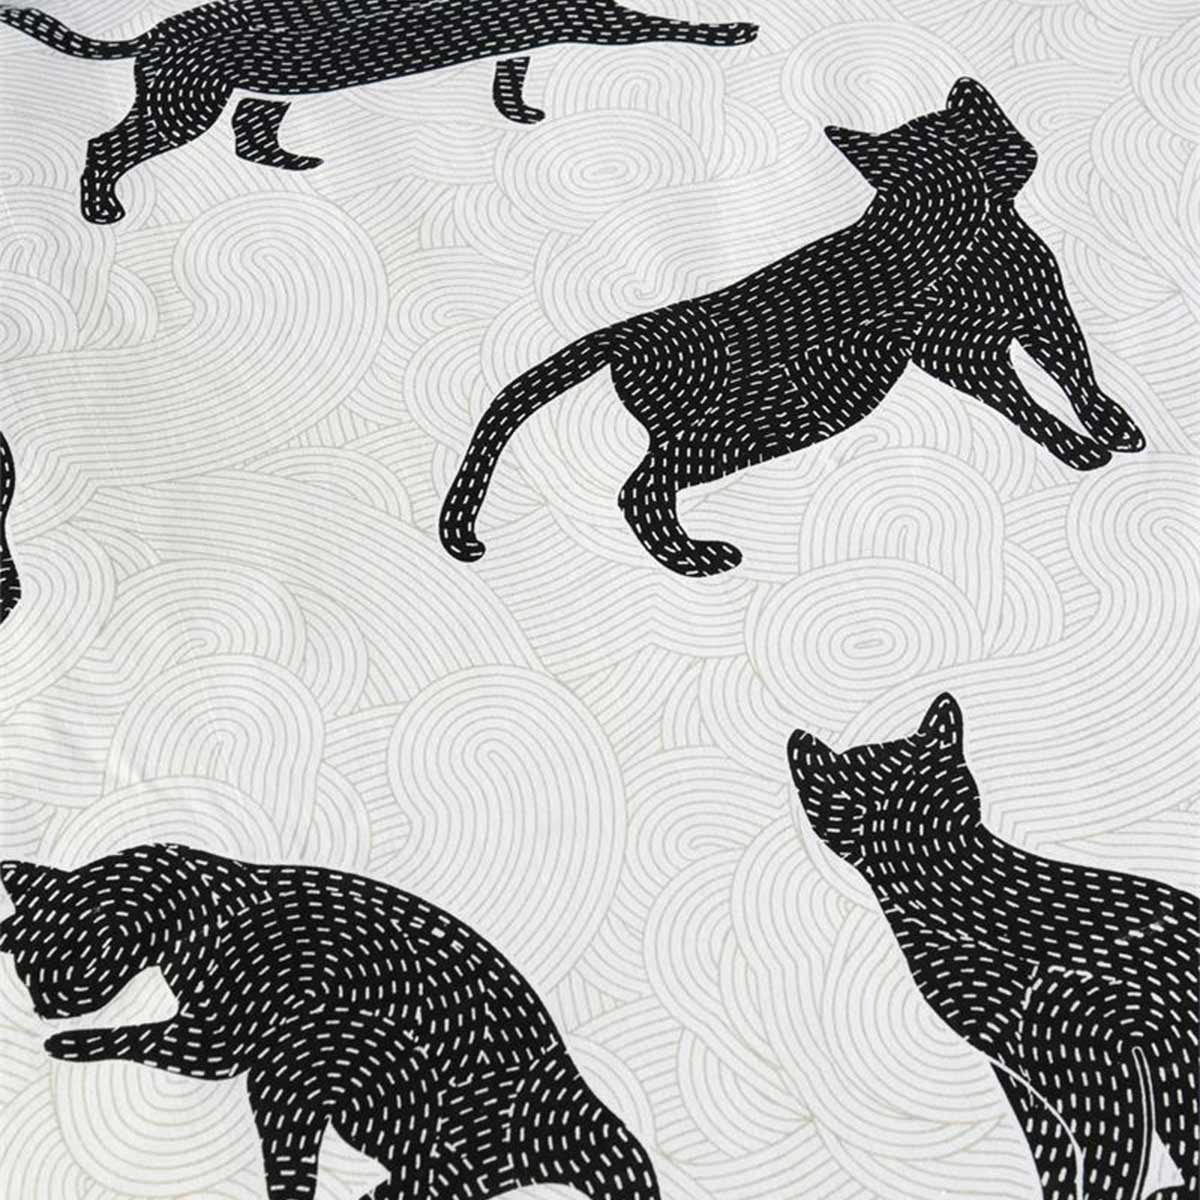 Black Cat Bedclothes 220 x 240 cm